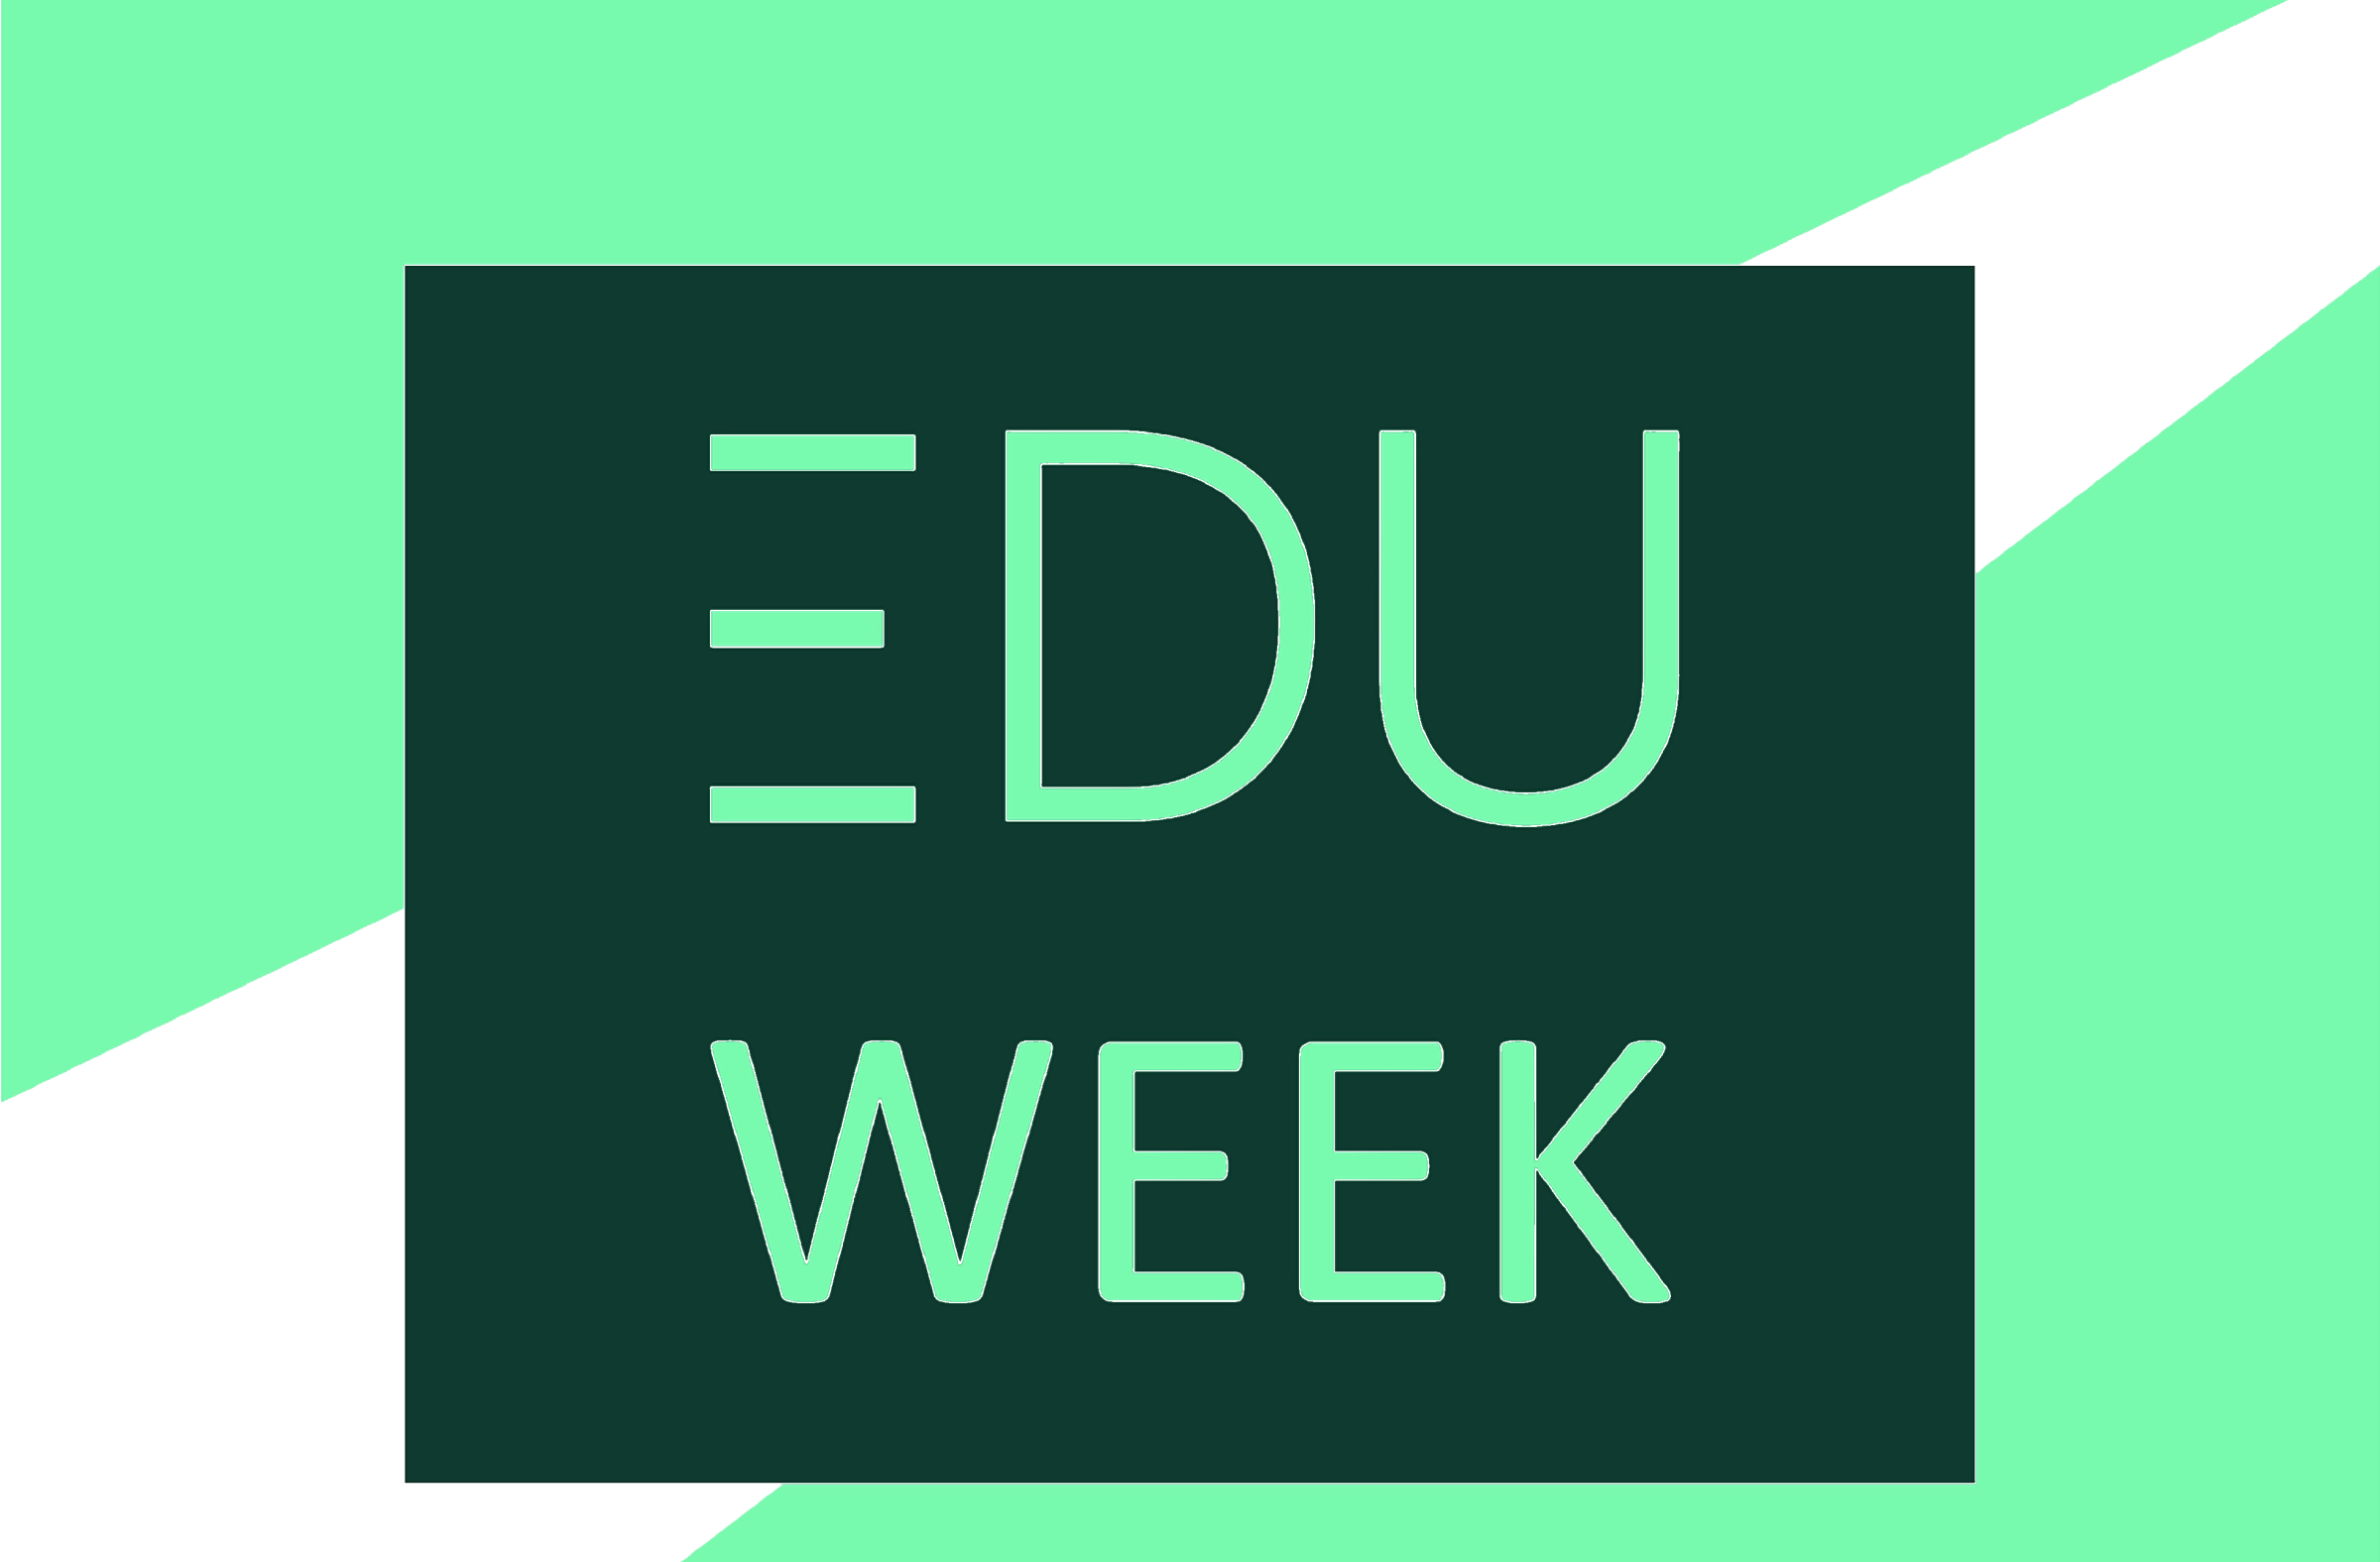 Čtvrtý ročník vzdělávací akce EDU Week